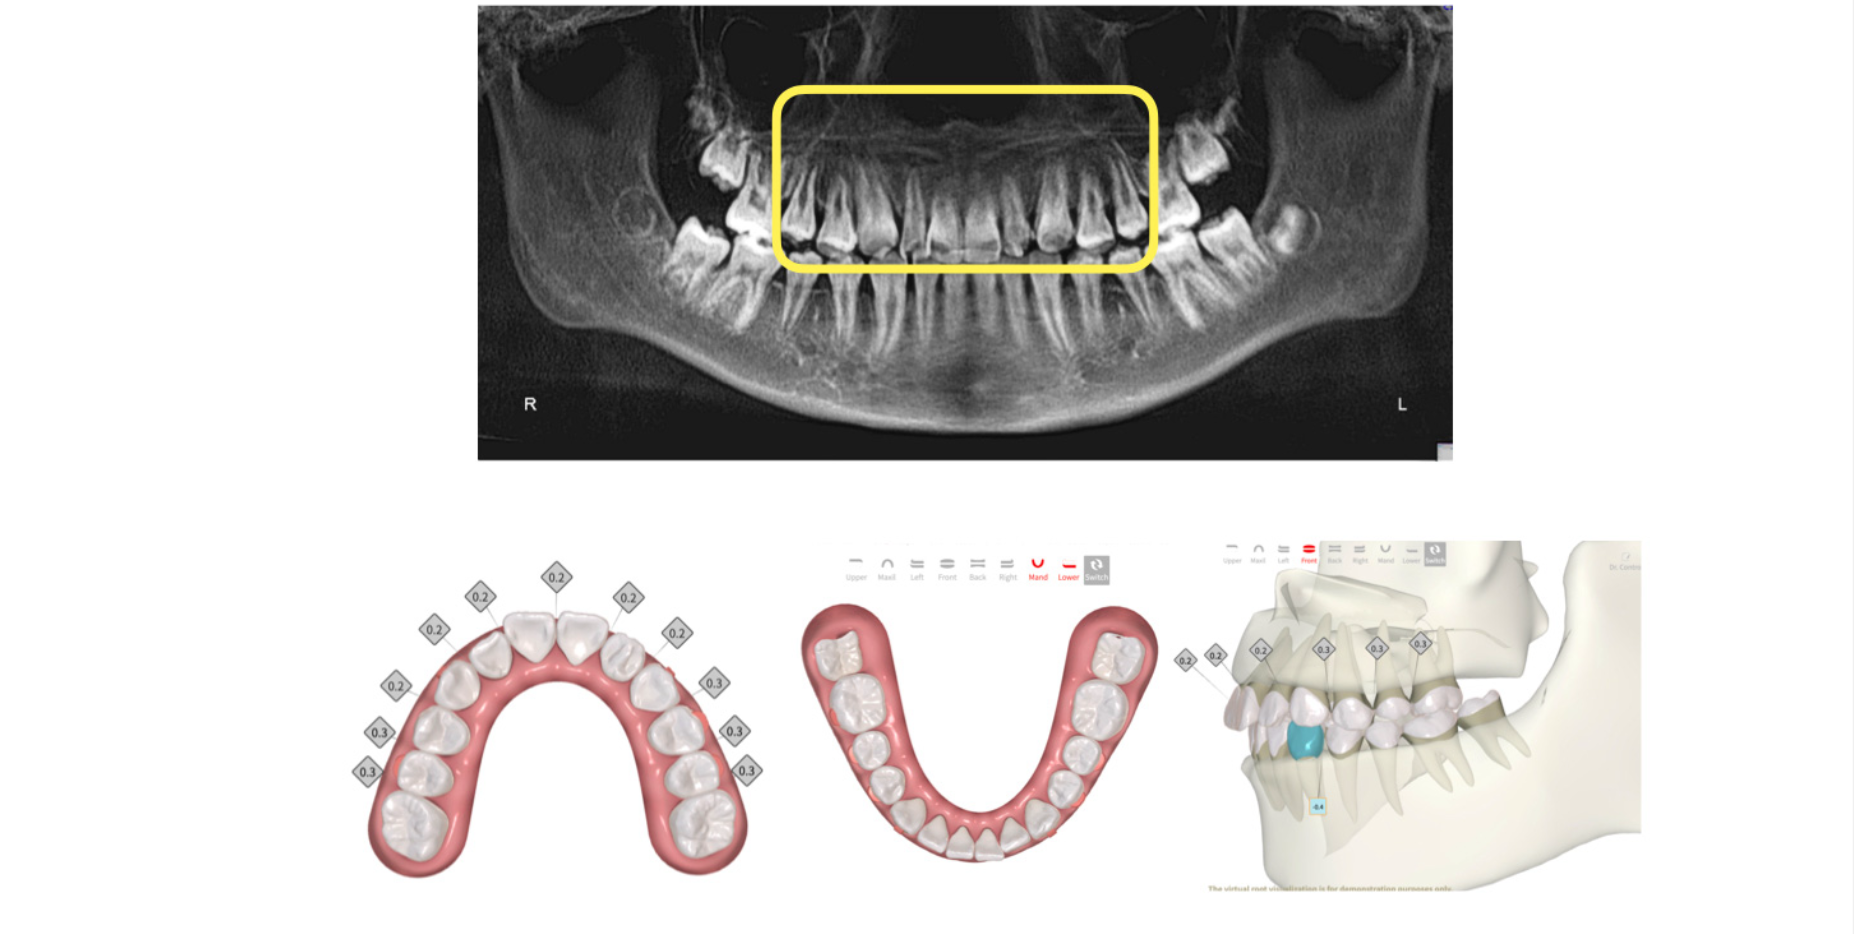 Alineadores ortodóncicos: Perspectivas actuales para el consultorio de ortodoncia moderno